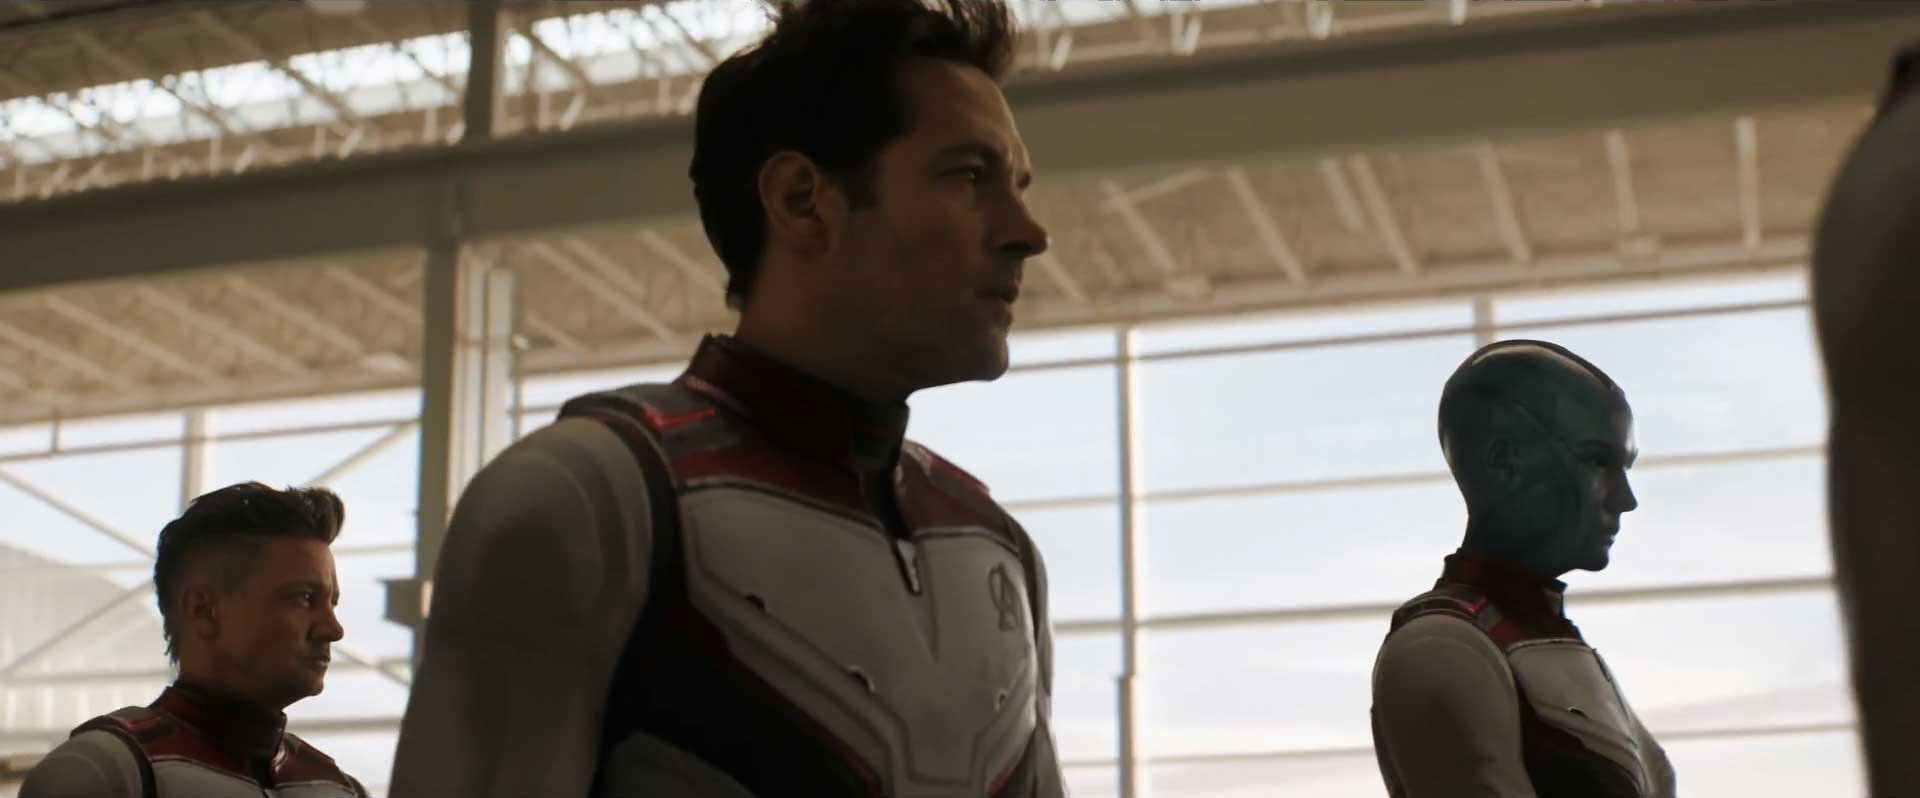 Avengers Endgame Trailer 2 Breakdown - Scott Lang Nebula